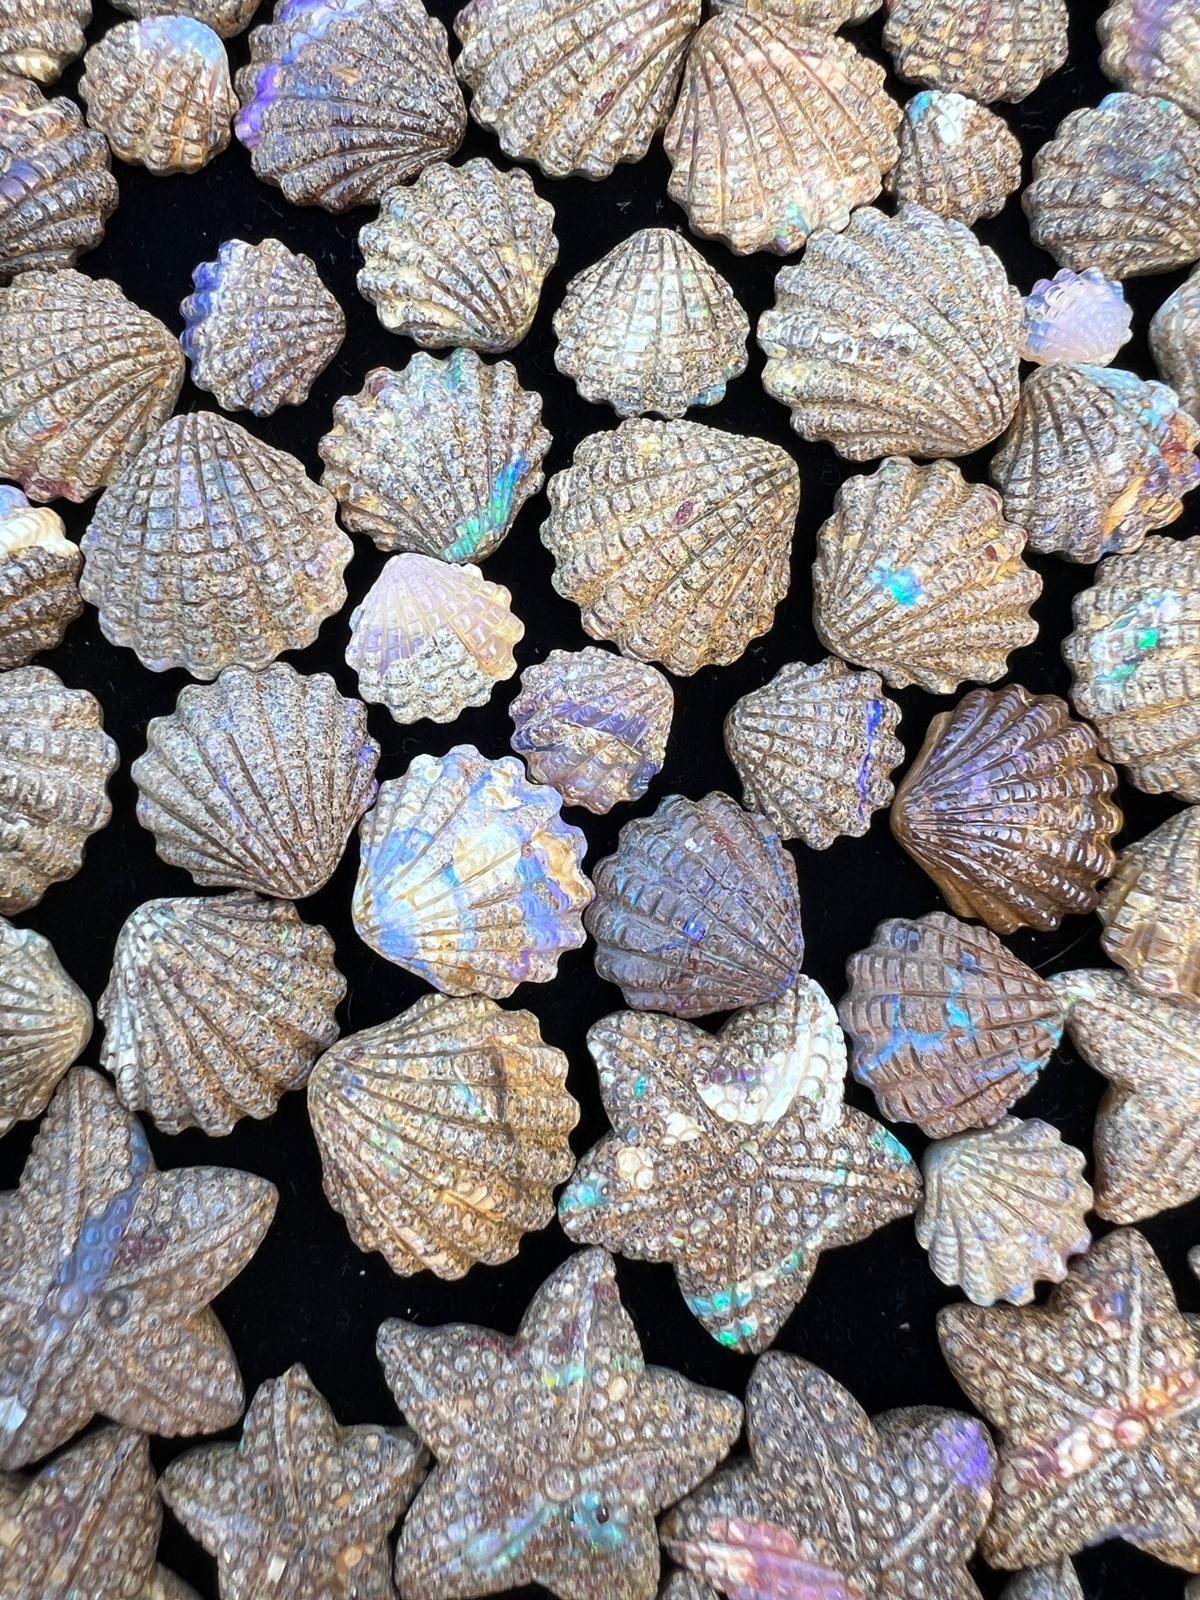 Exquisite 39.58 Ct Australian Boulder Opal Matrix Scallop Shell Carvings: Parcel of 3